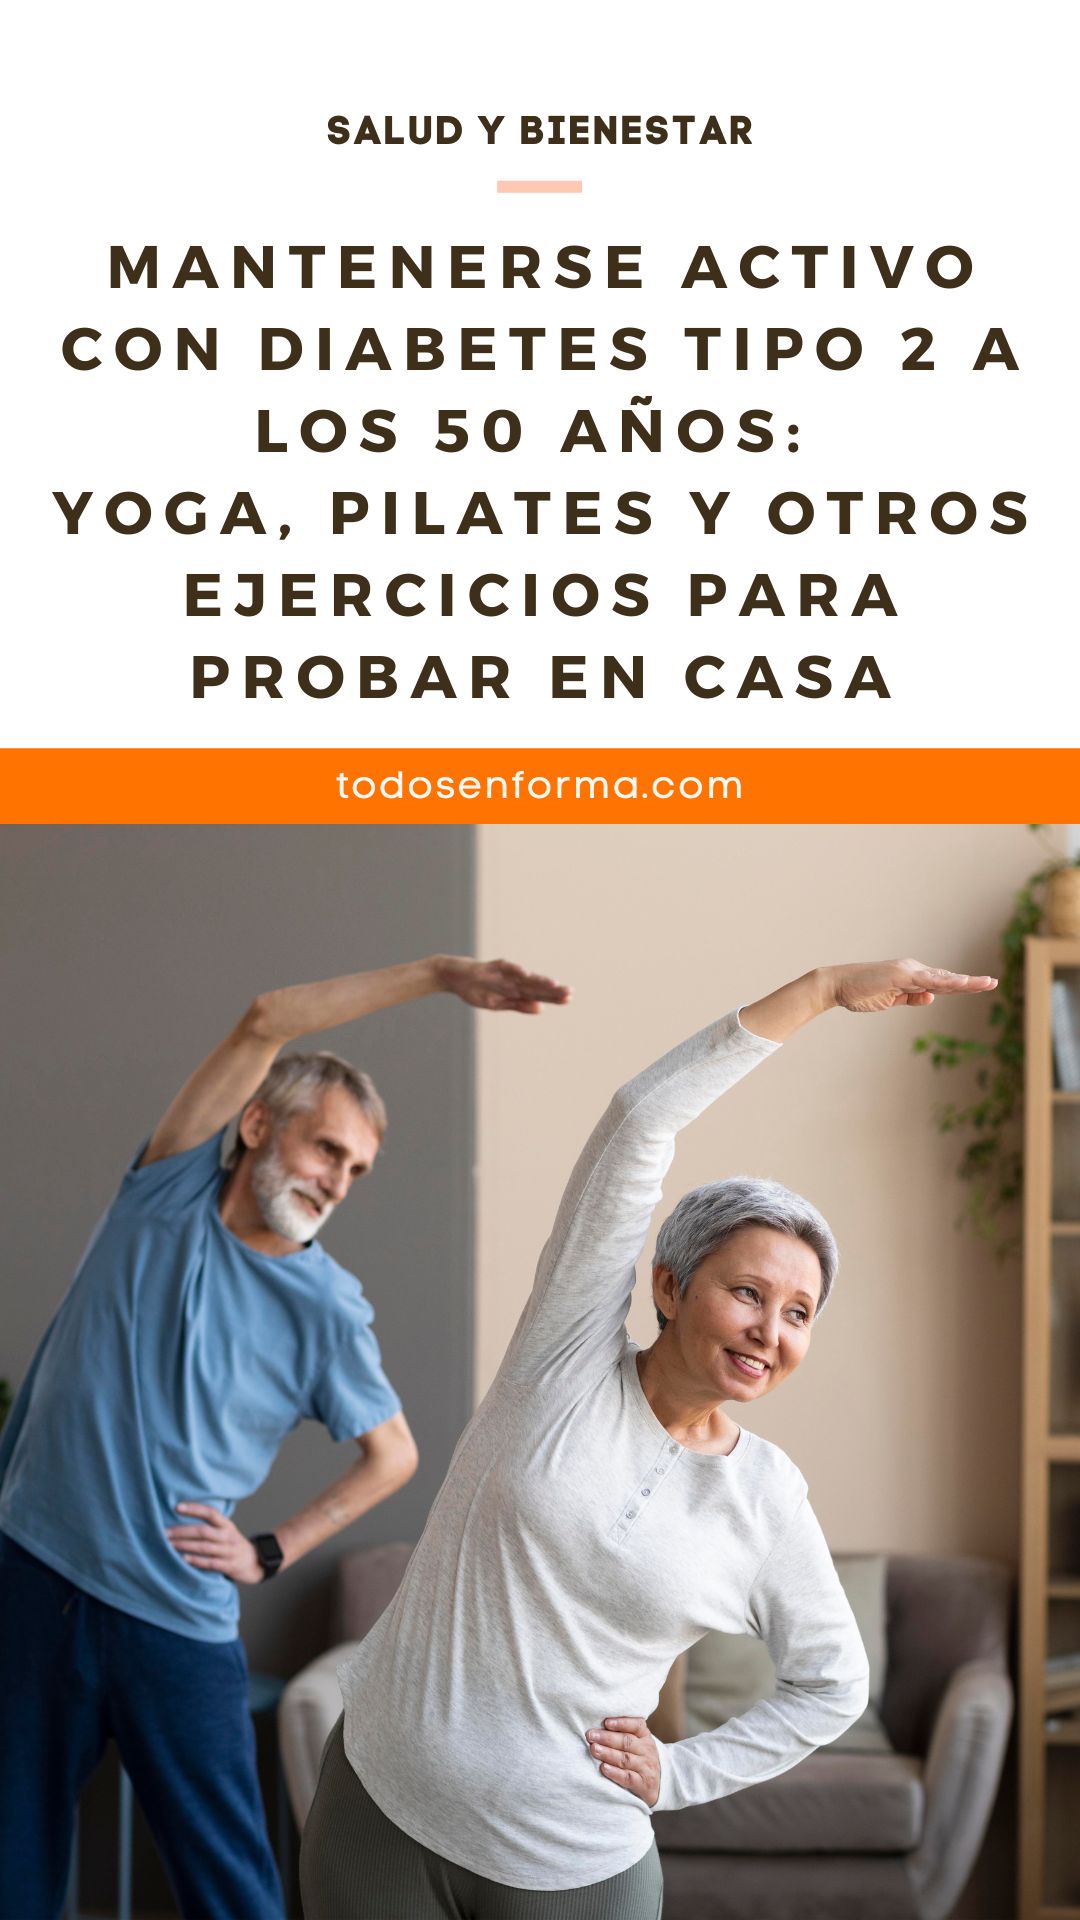 Mantenerse activo con diabetes tipo 2 a los 50 años: Yoga, pilates y otros ejercicios para probar en casa